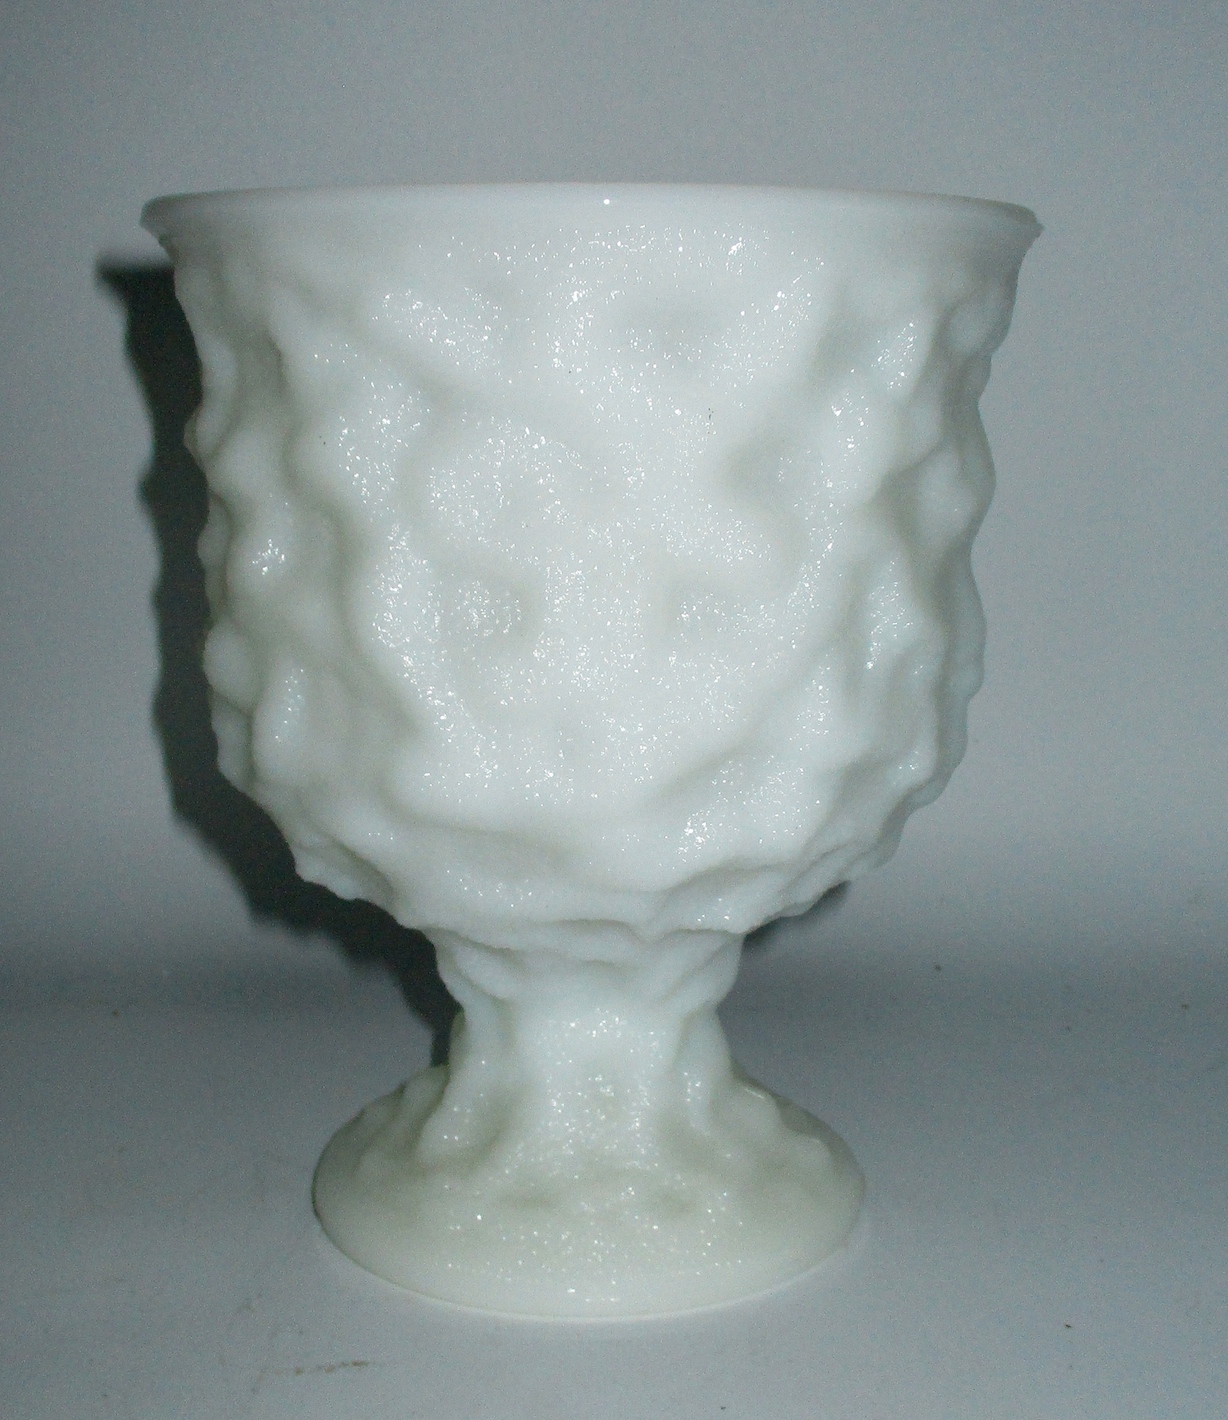 E. O. Brody Milk Glass Goblet - 6 1/2" H